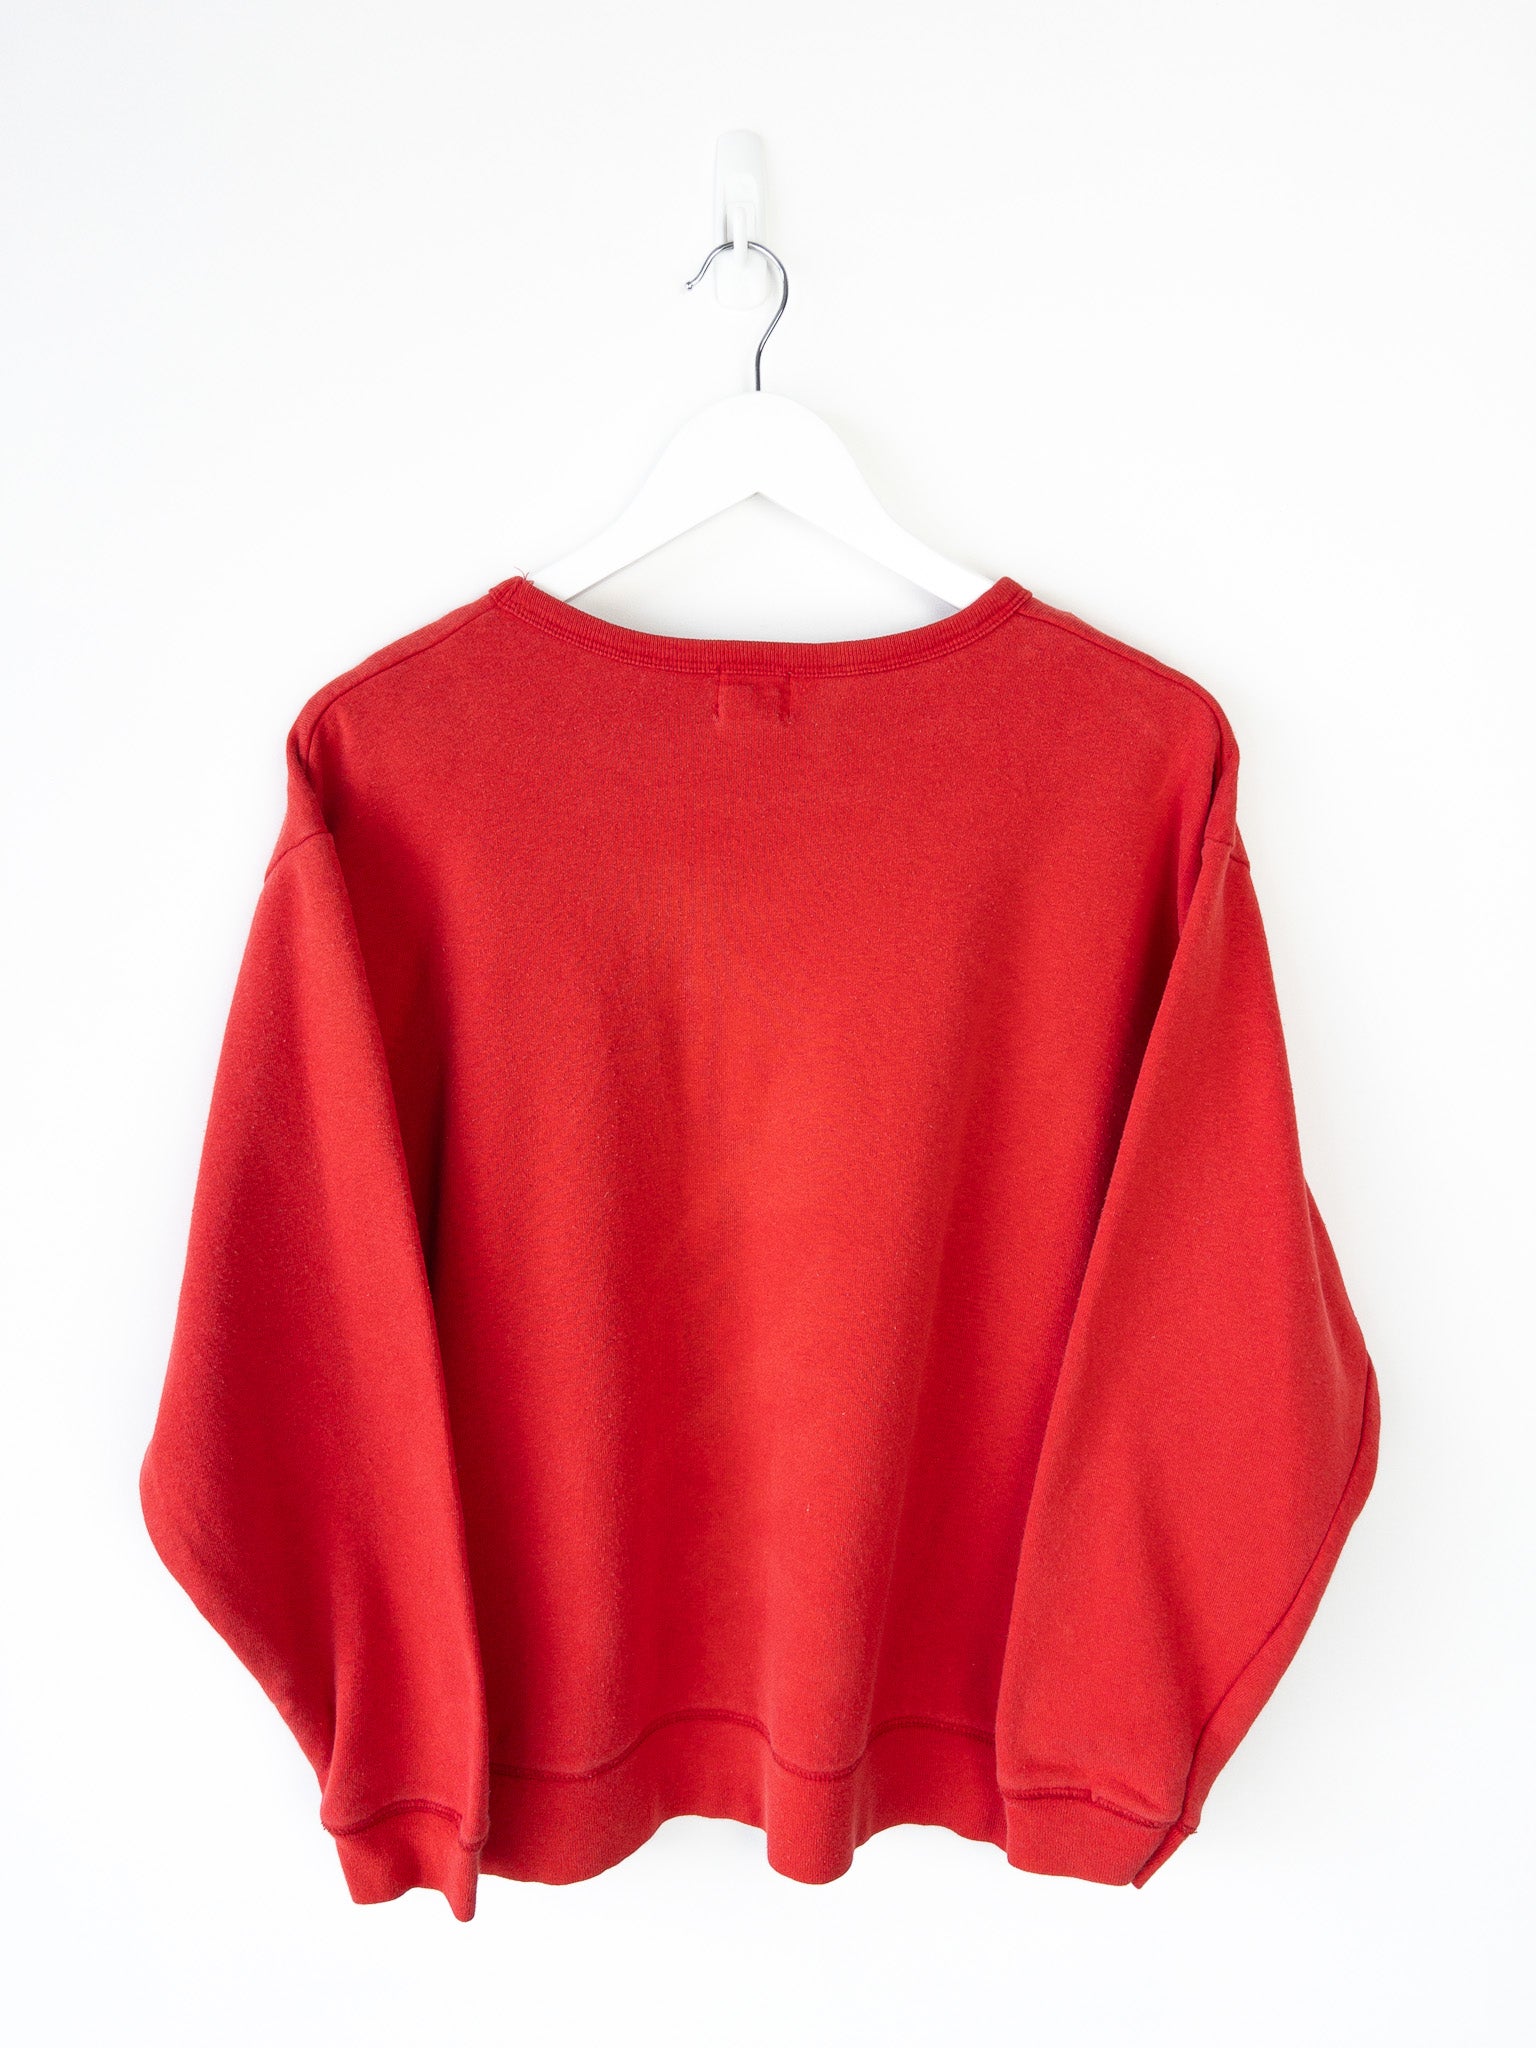 Vintage Calvin Klein Sweatshirt (M)